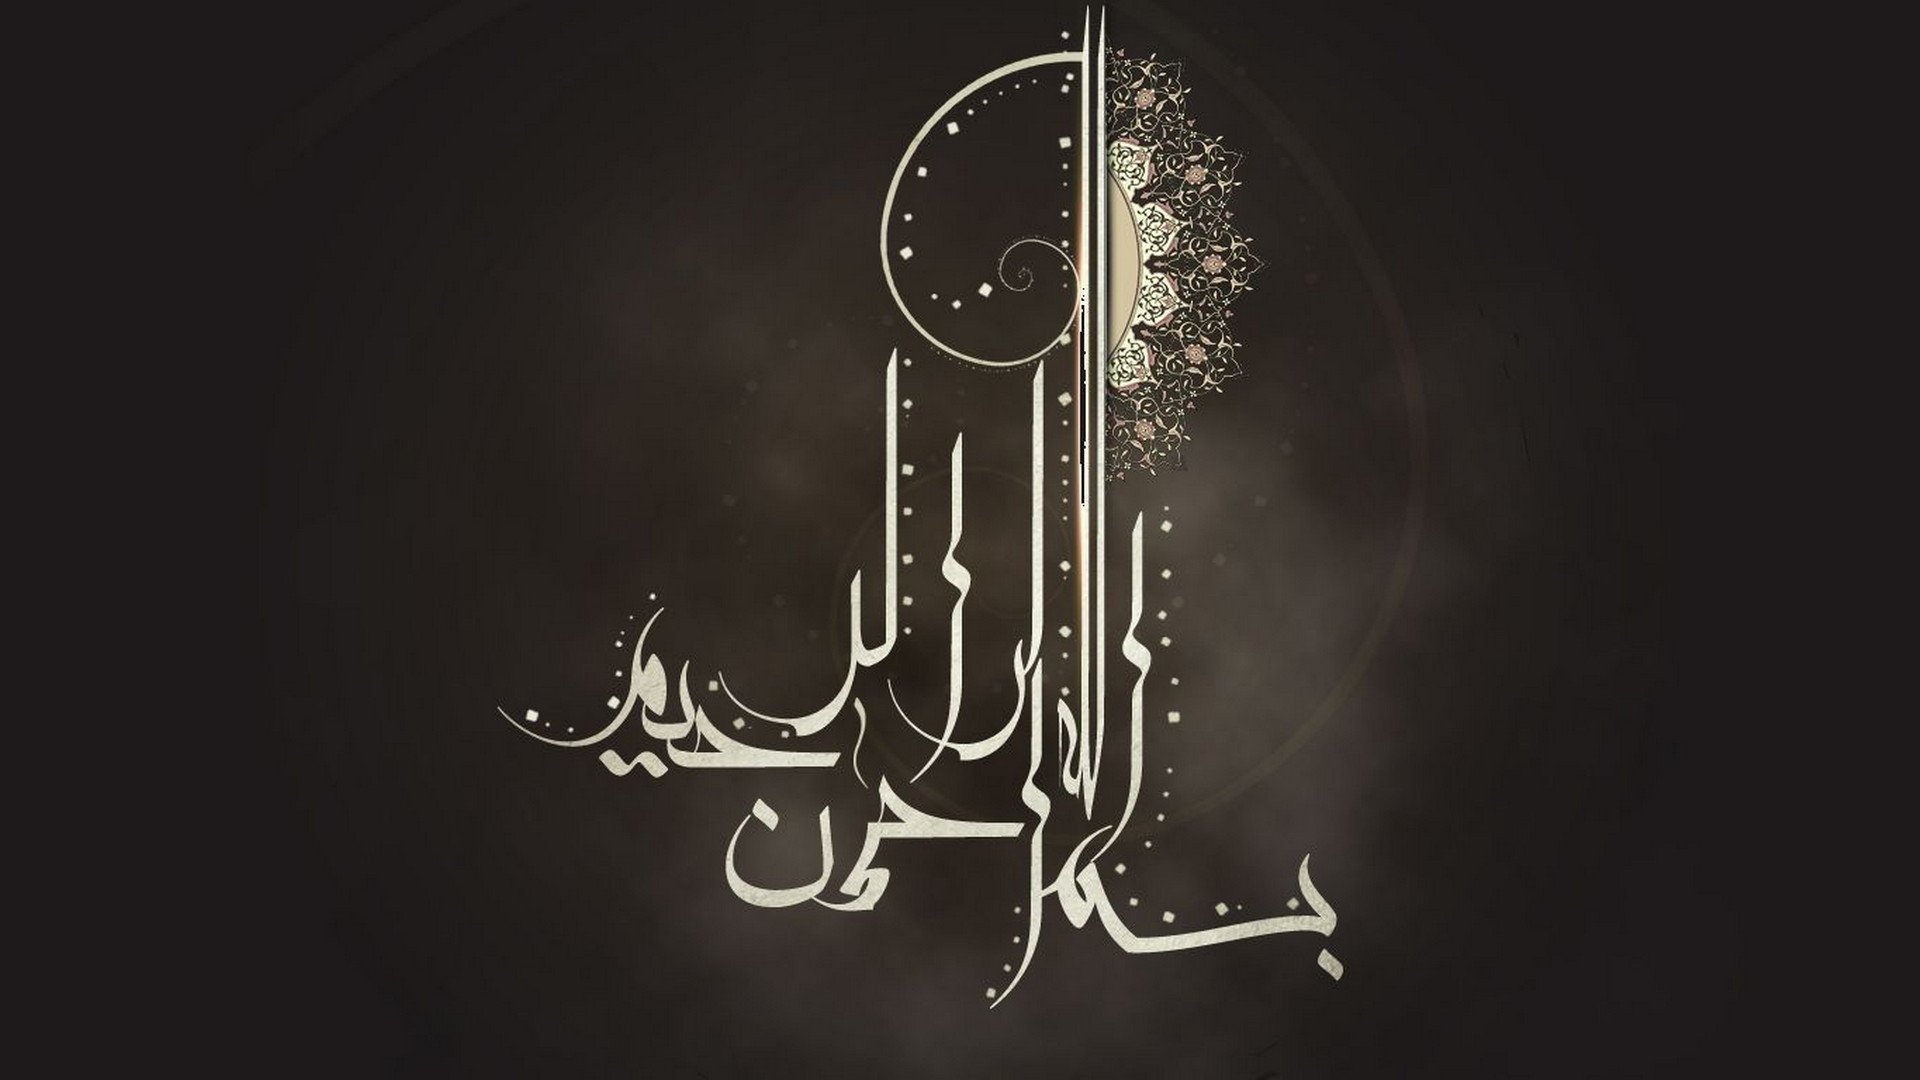 Обои на телефон на арабском. Исламская каллиграфия Бисмилла. Арабская каллиграфия Бисмиллях. Мусульманские обои.